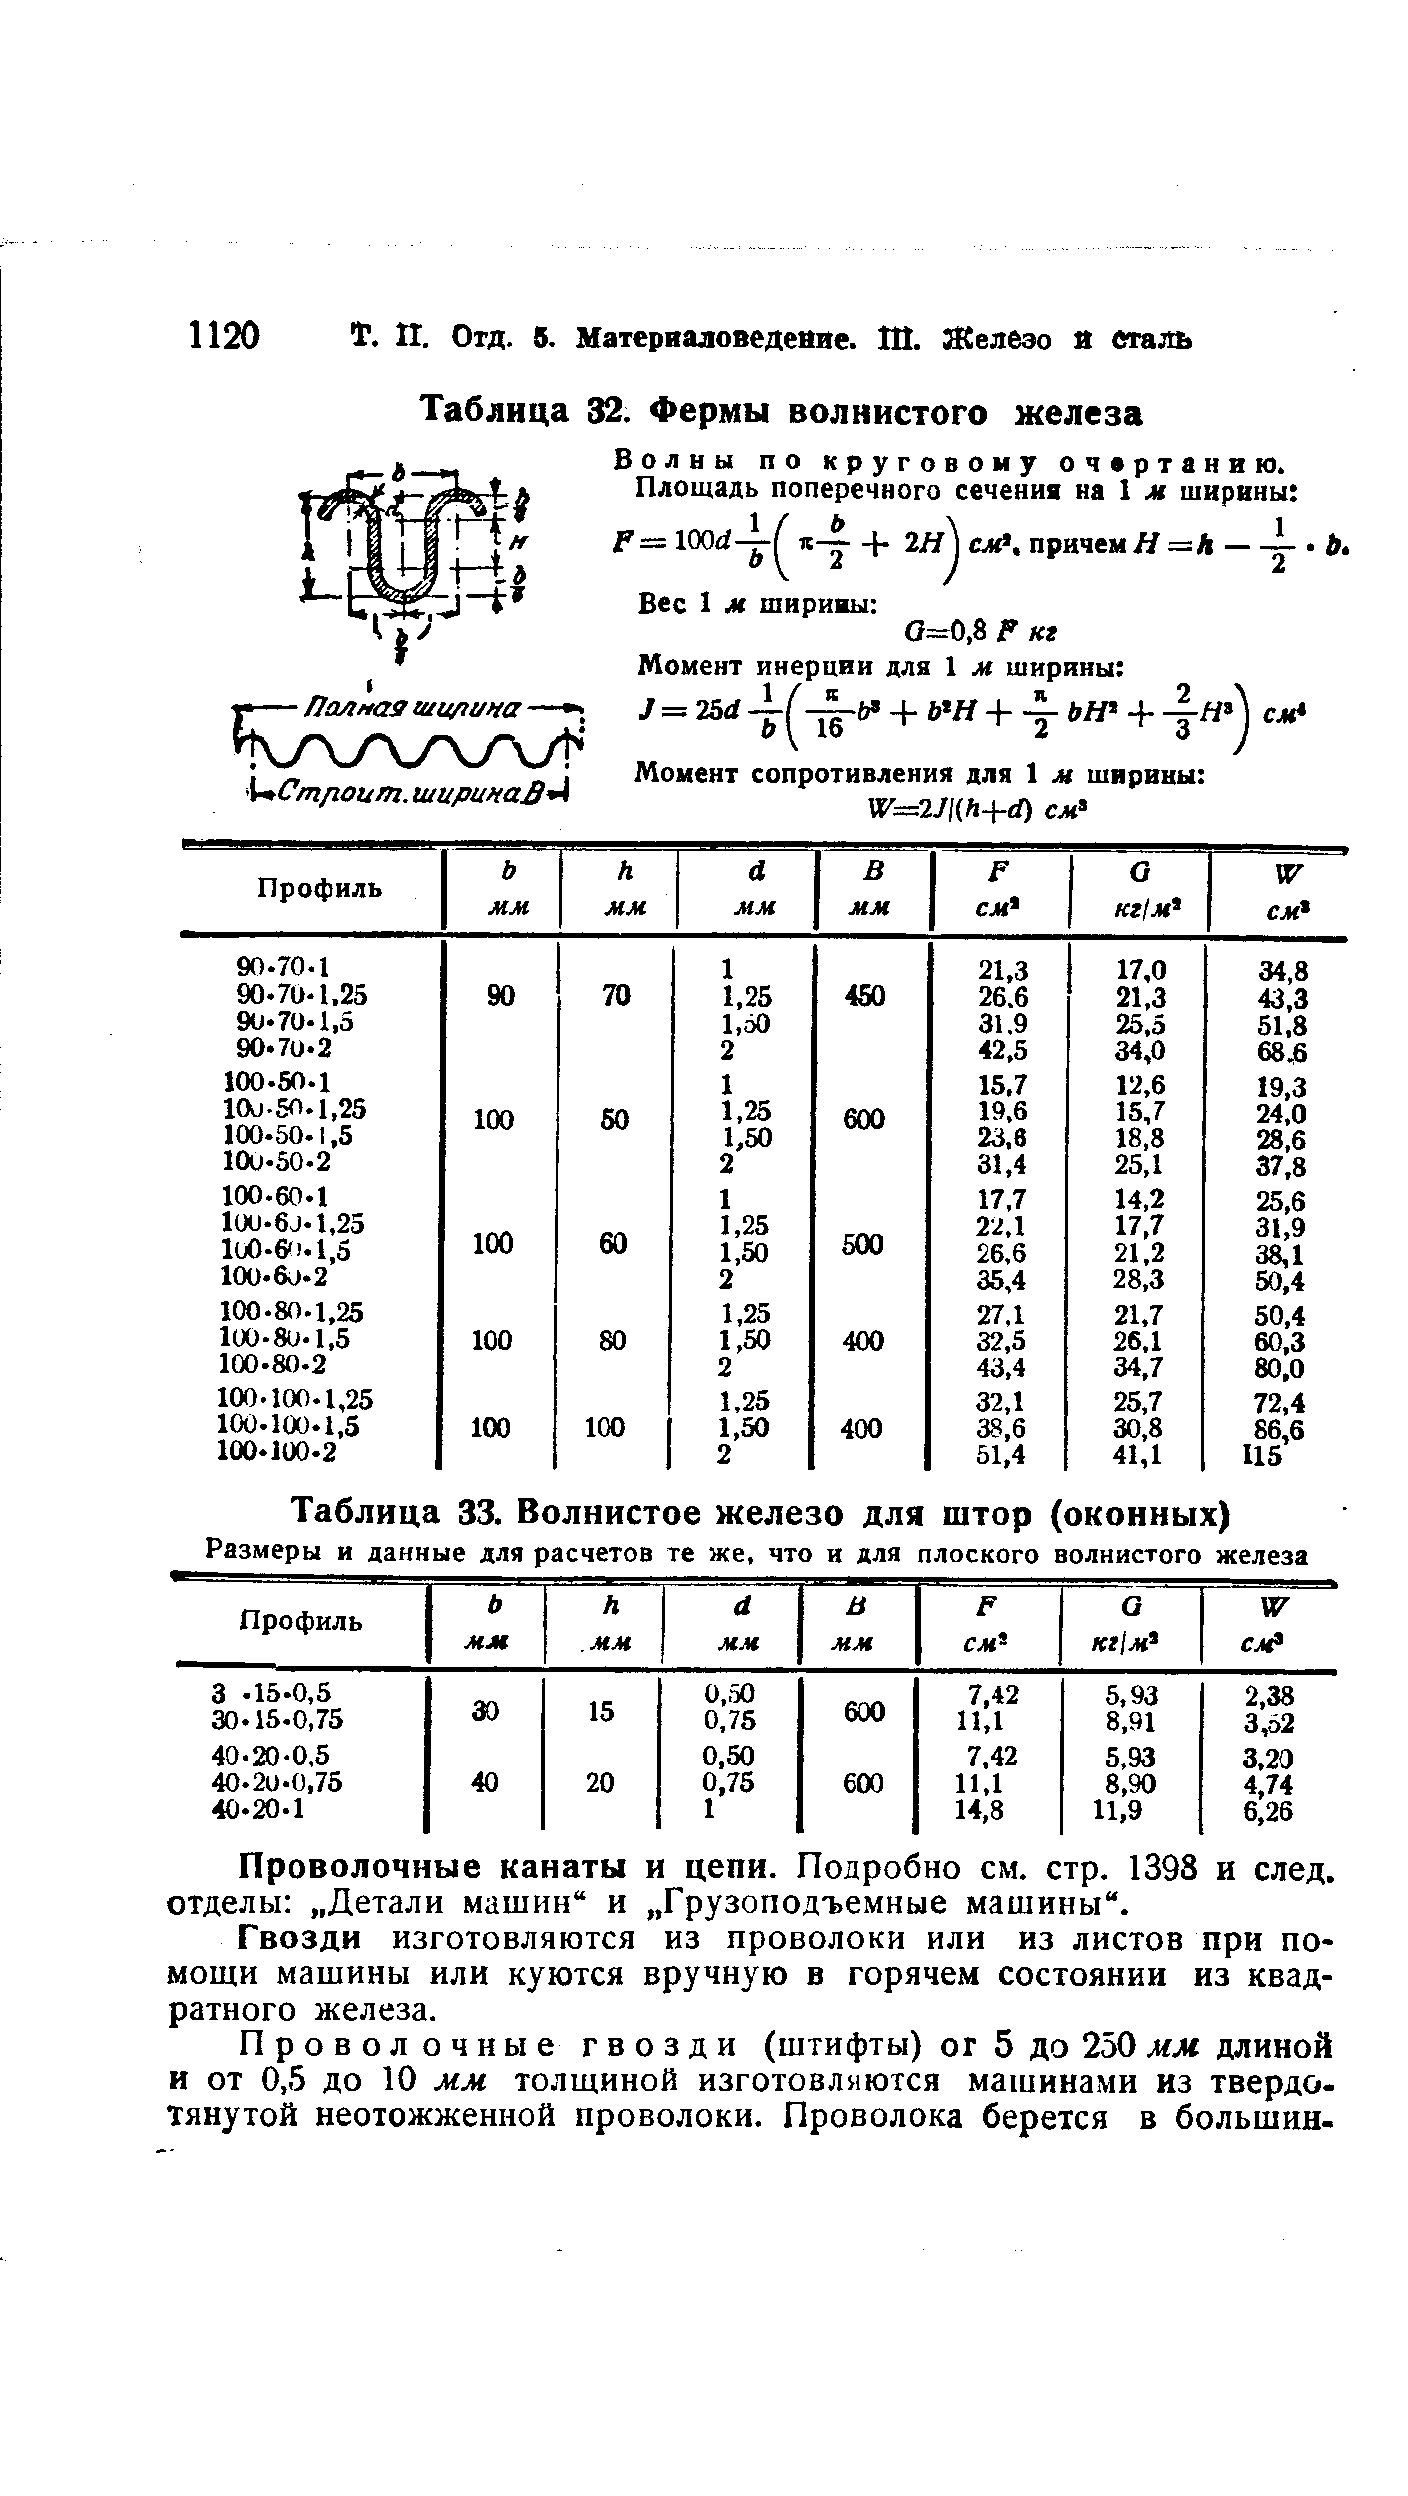 Таблица 33. Волнистое железо для штор (оконных)
